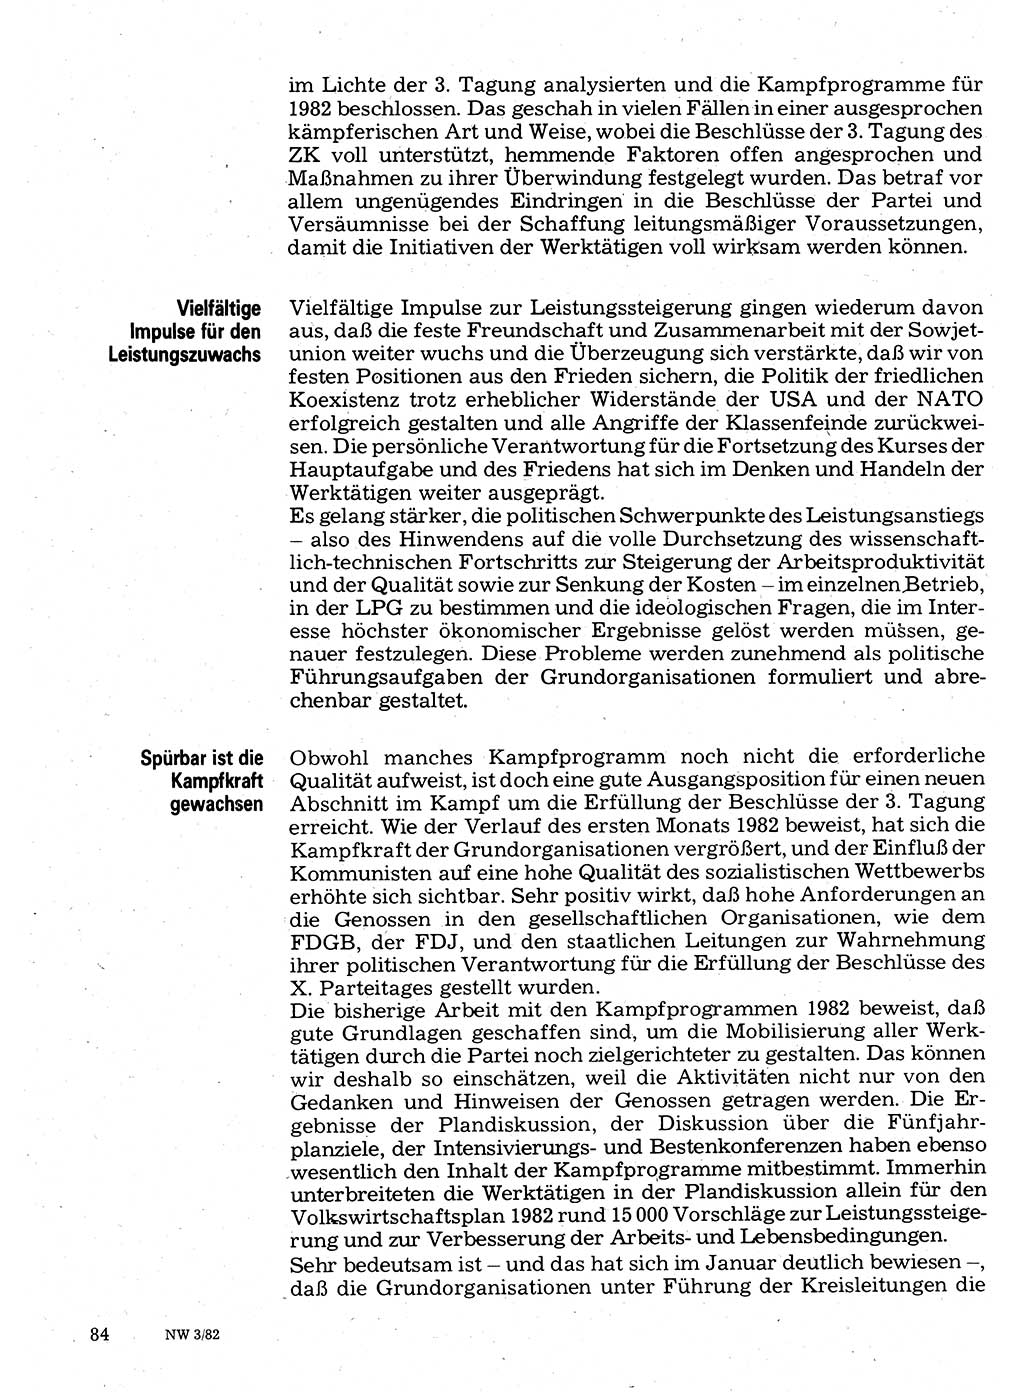 Neuer Weg (NW), Organ des Zentralkomitees (ZK) der SED (Sozialistische Einheitspartei Deutschlands) für Fragen des Parteilebens, 37. Jahrgang [Deutsche Demokratische Republik (DDR)] 1982, Seite 84 (NW ZK SED DDR 1982, S. 84)